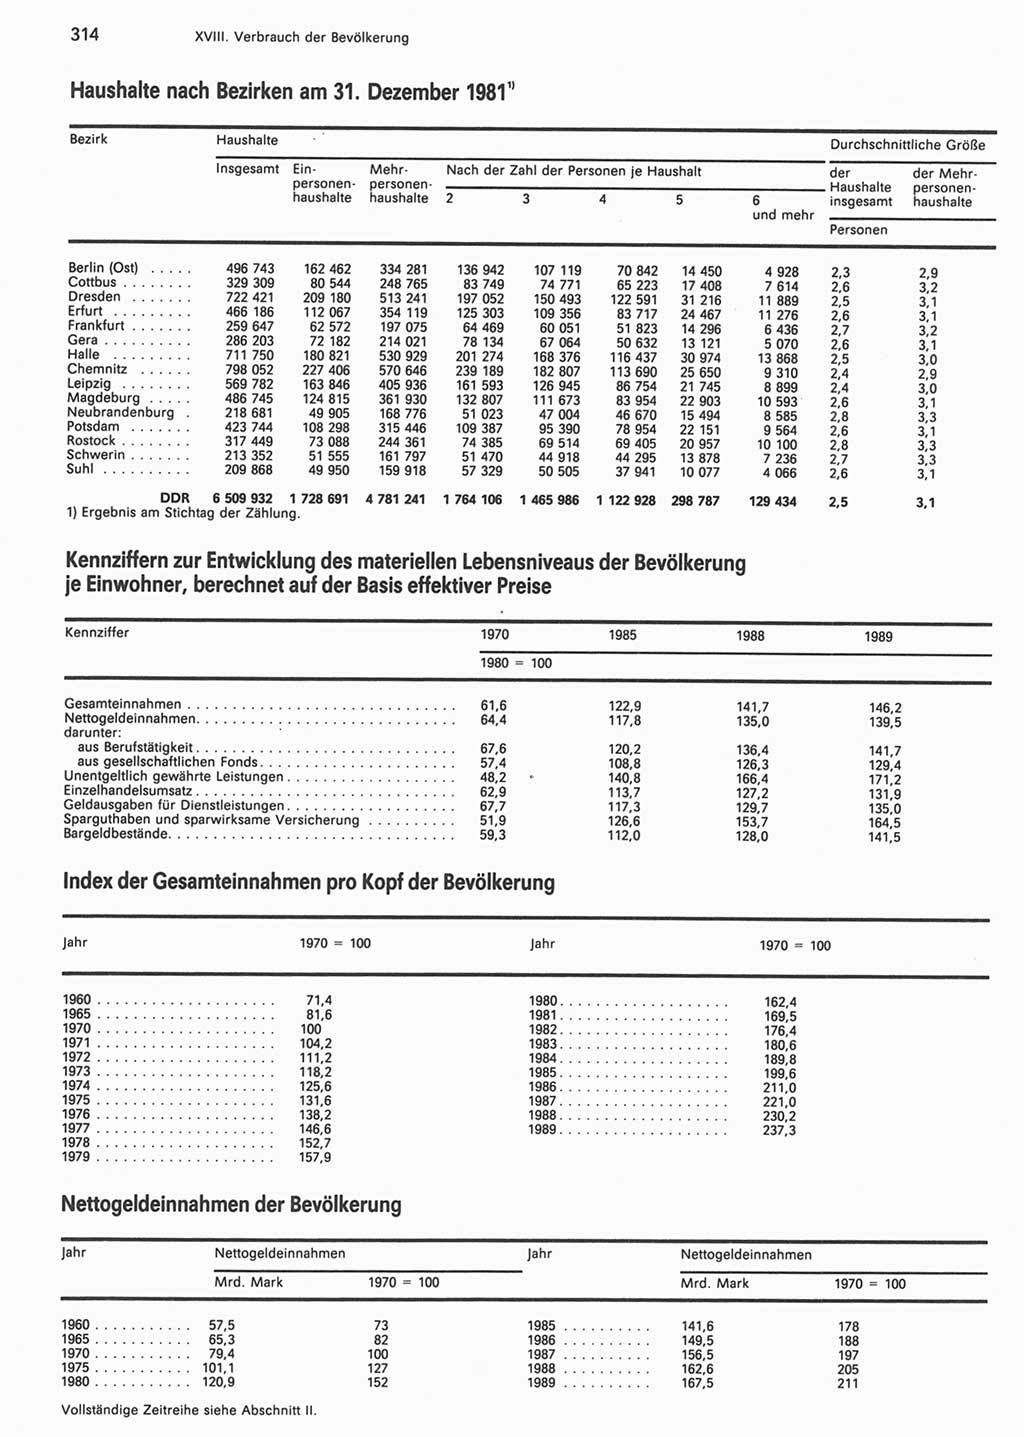 Statistisches Jahrbuch der Deutschen Demokratischen Republik (DDR) 1990, Seite 314 (Stat. Jb. DDR 1990, S. 314)